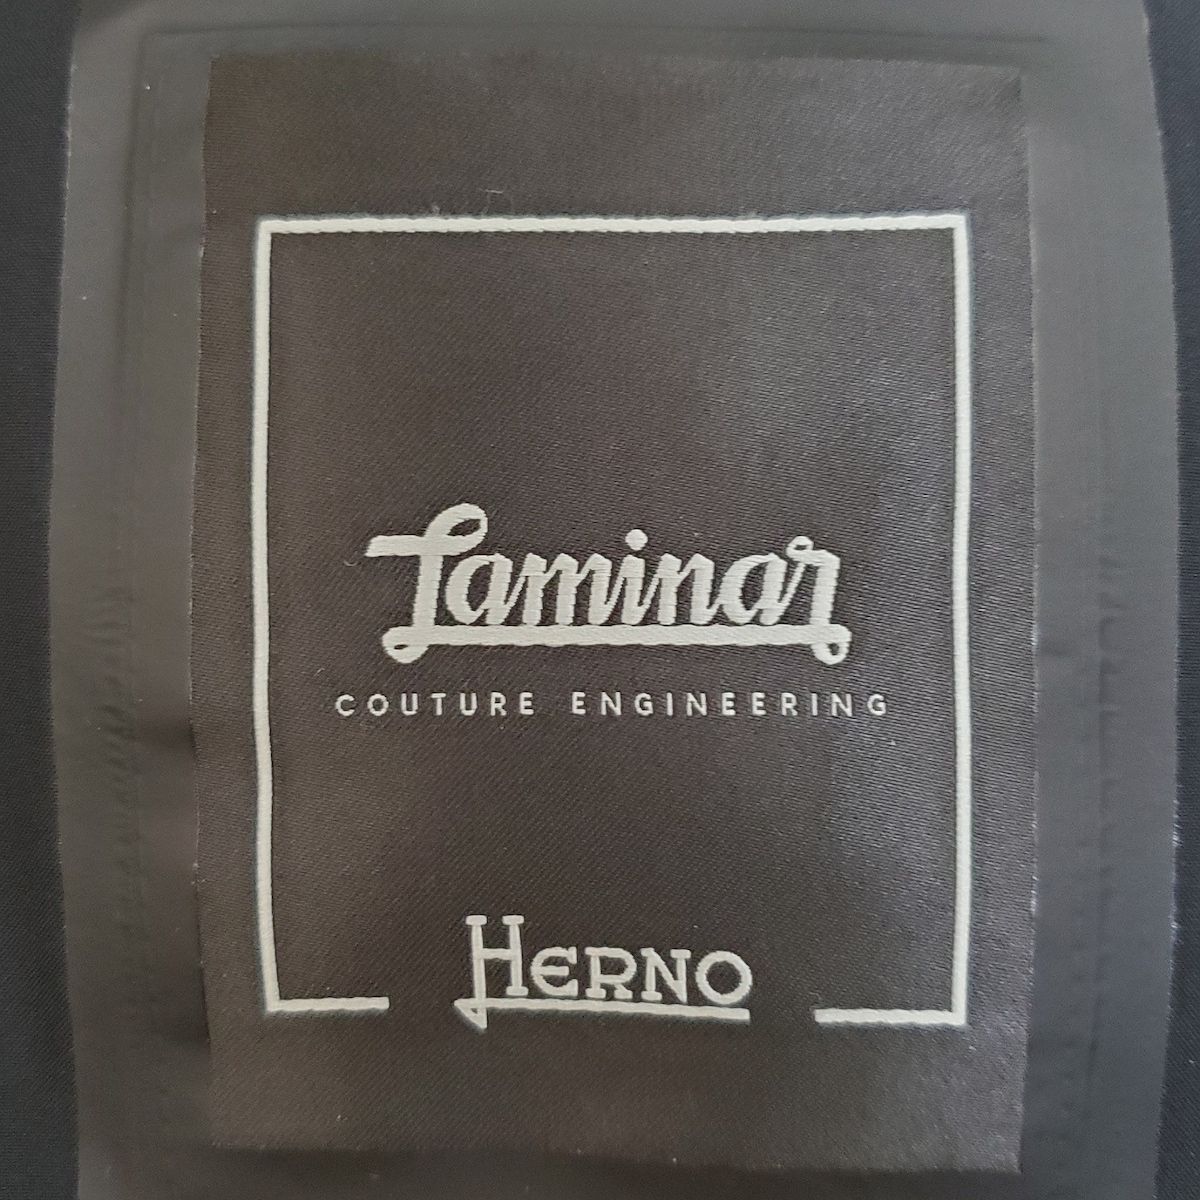 HERNO(ヘルノ) ダウンジャケット サイズ42 M レディース美品 - アイボリー×黒 長袖/Laminar/冬